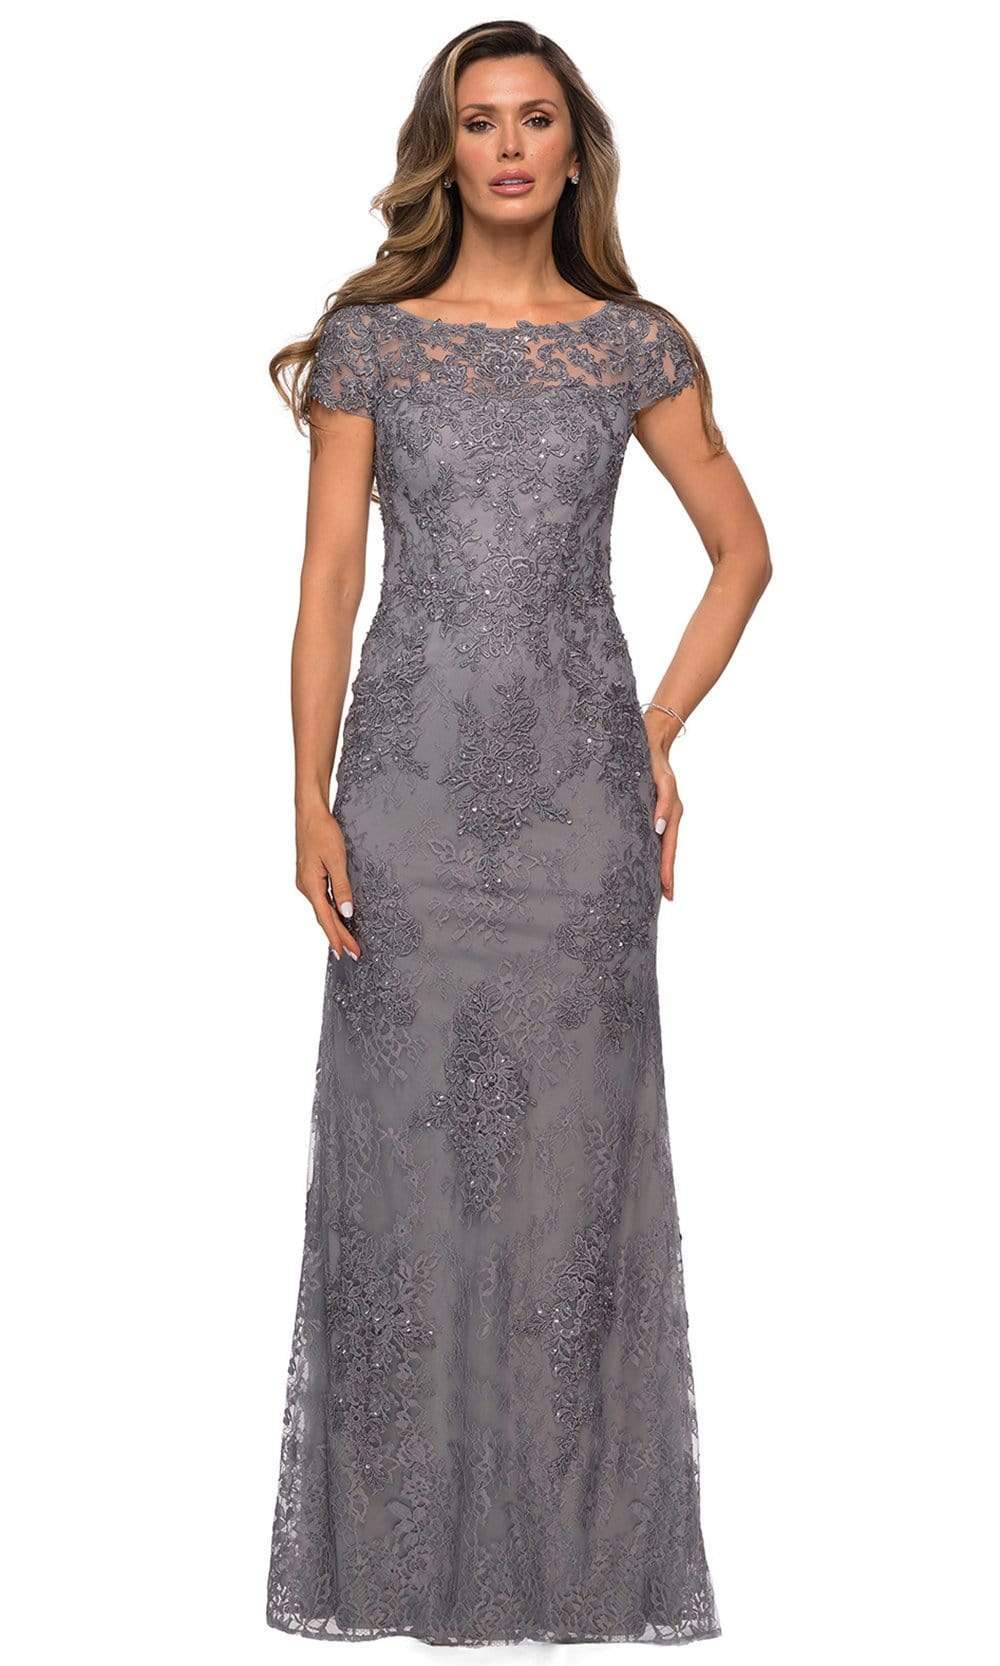 La Femme - Lace Applique Long Sheath Dress 27856SC - 1 pc Dark Platinum In Size 8 Available CCSALE 8 / Dark Platinum